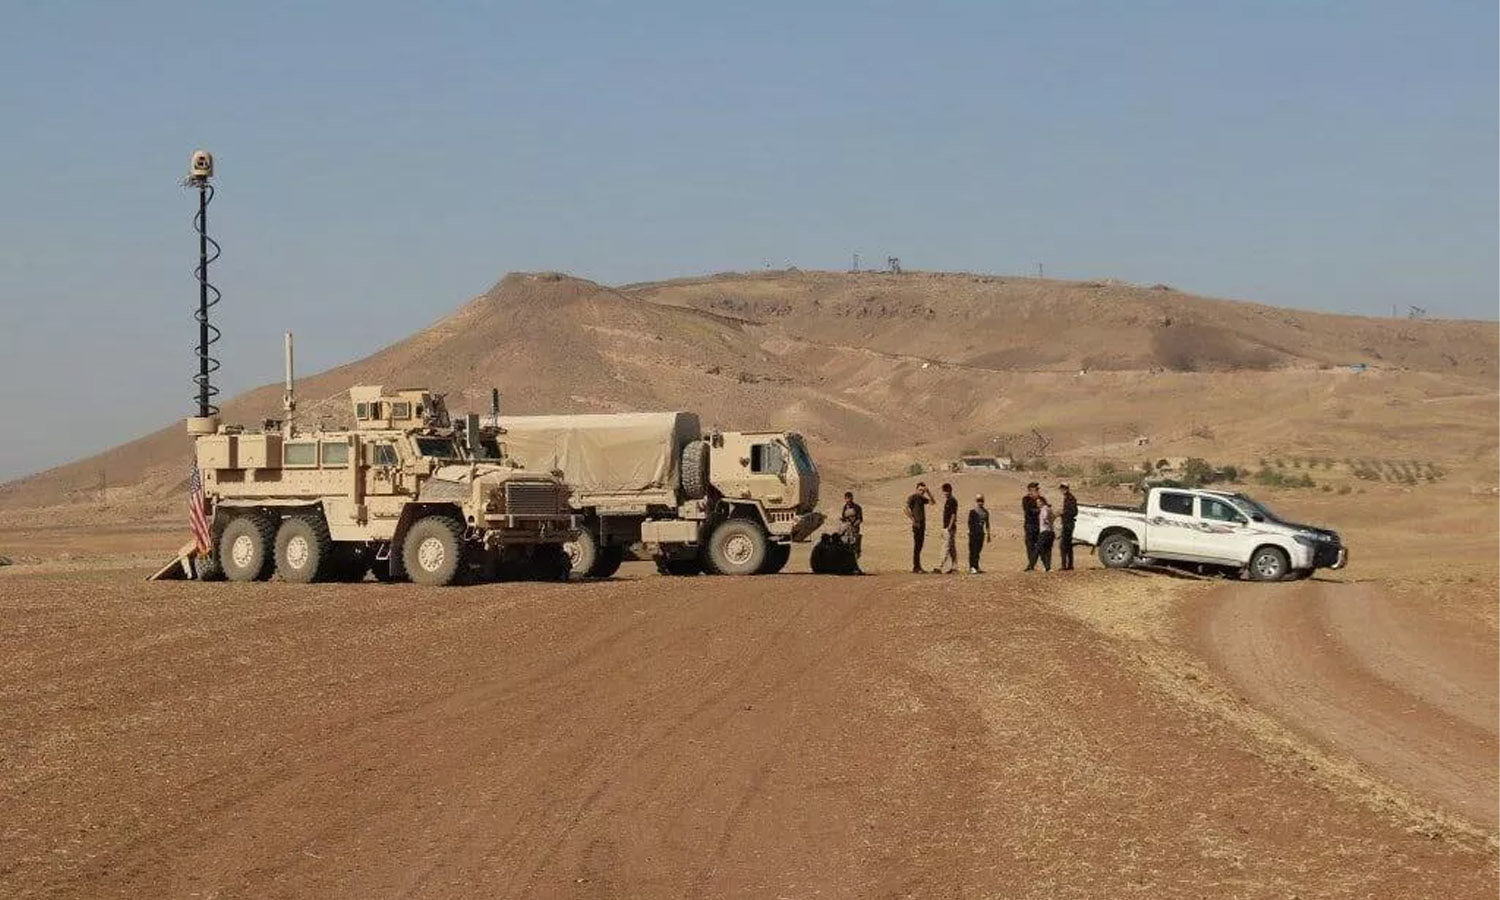 آليات عسكرية أمريكية بجانب سكان محليين في سوريا (سبوتنيك)